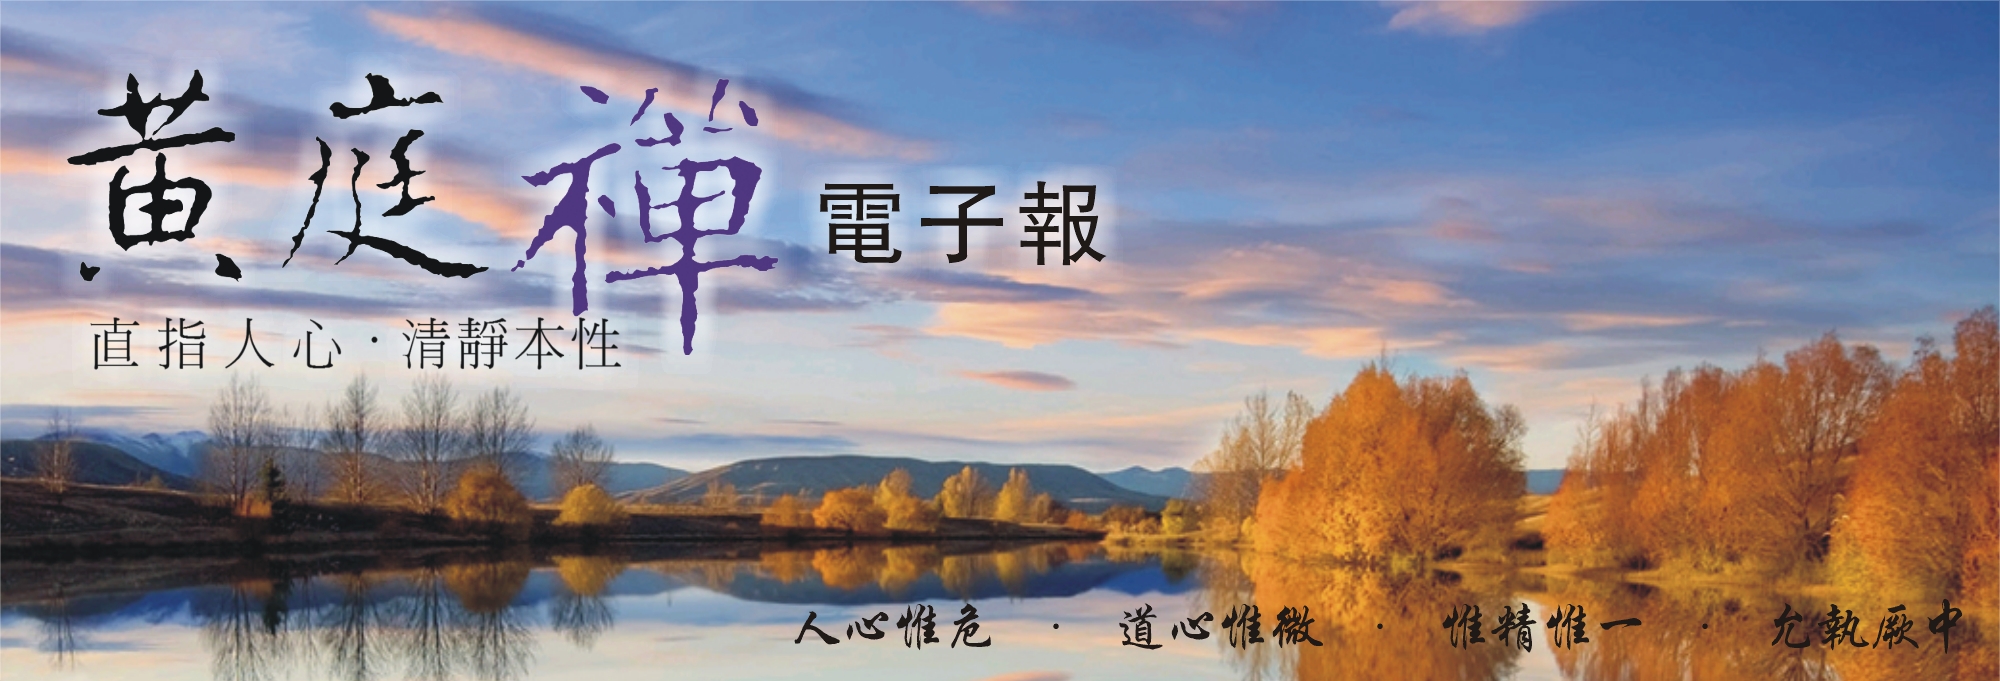 中華黃庭禪學會2014.12.11電子報